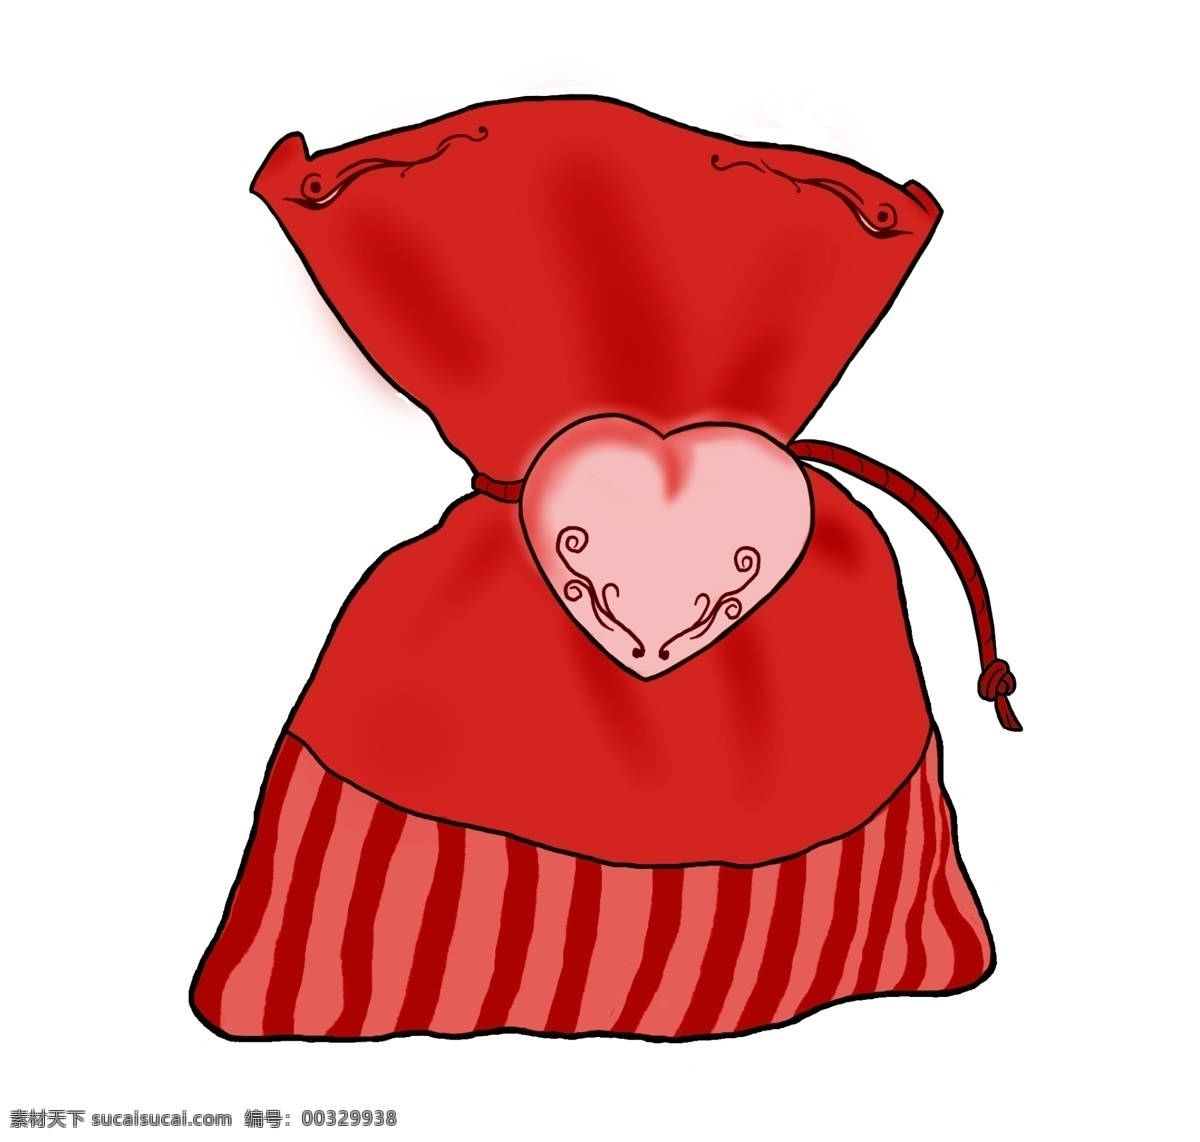 手绘 心形 福 袋 插画 红色的福袋 手绘福袋插画 创意福袋插画 心形福袋 圆鼓鼓的红包 漂亮的福袋